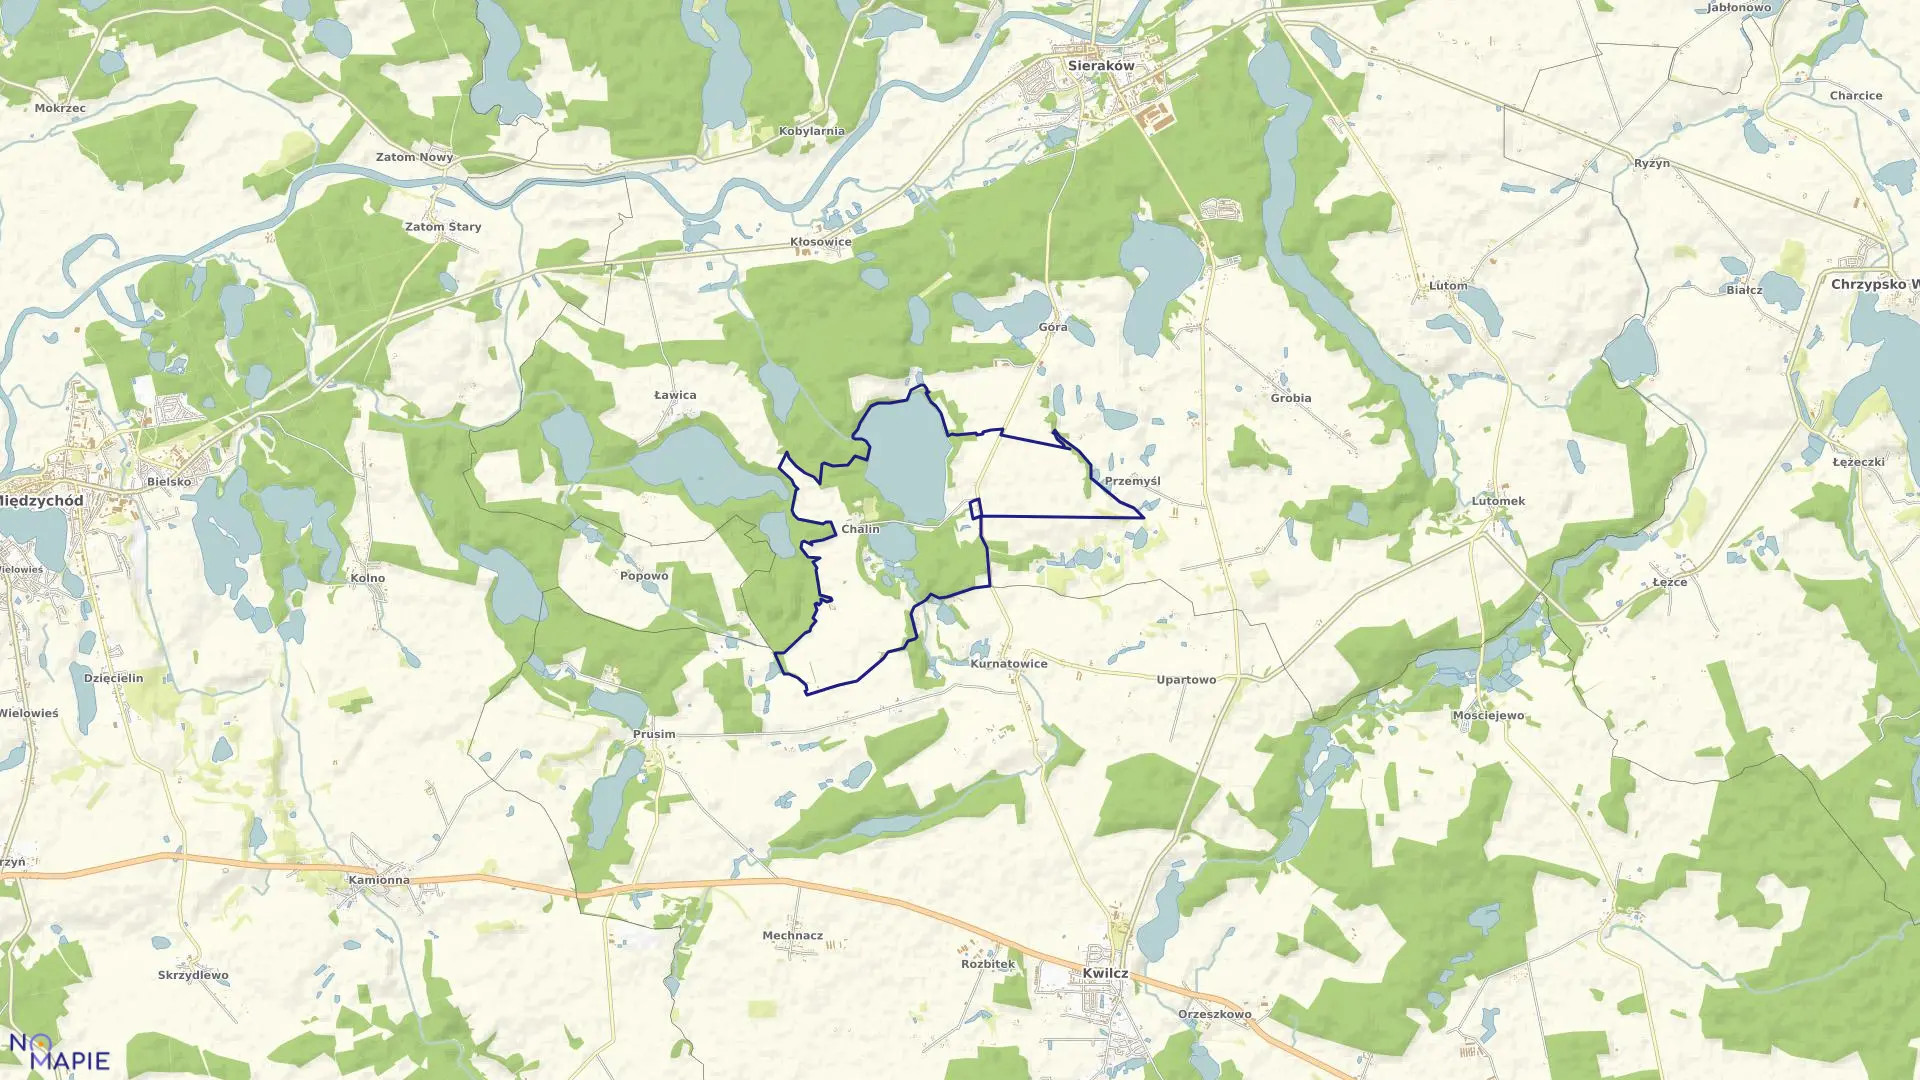 Mapa obrębu CHALIN w gminie Sieraków